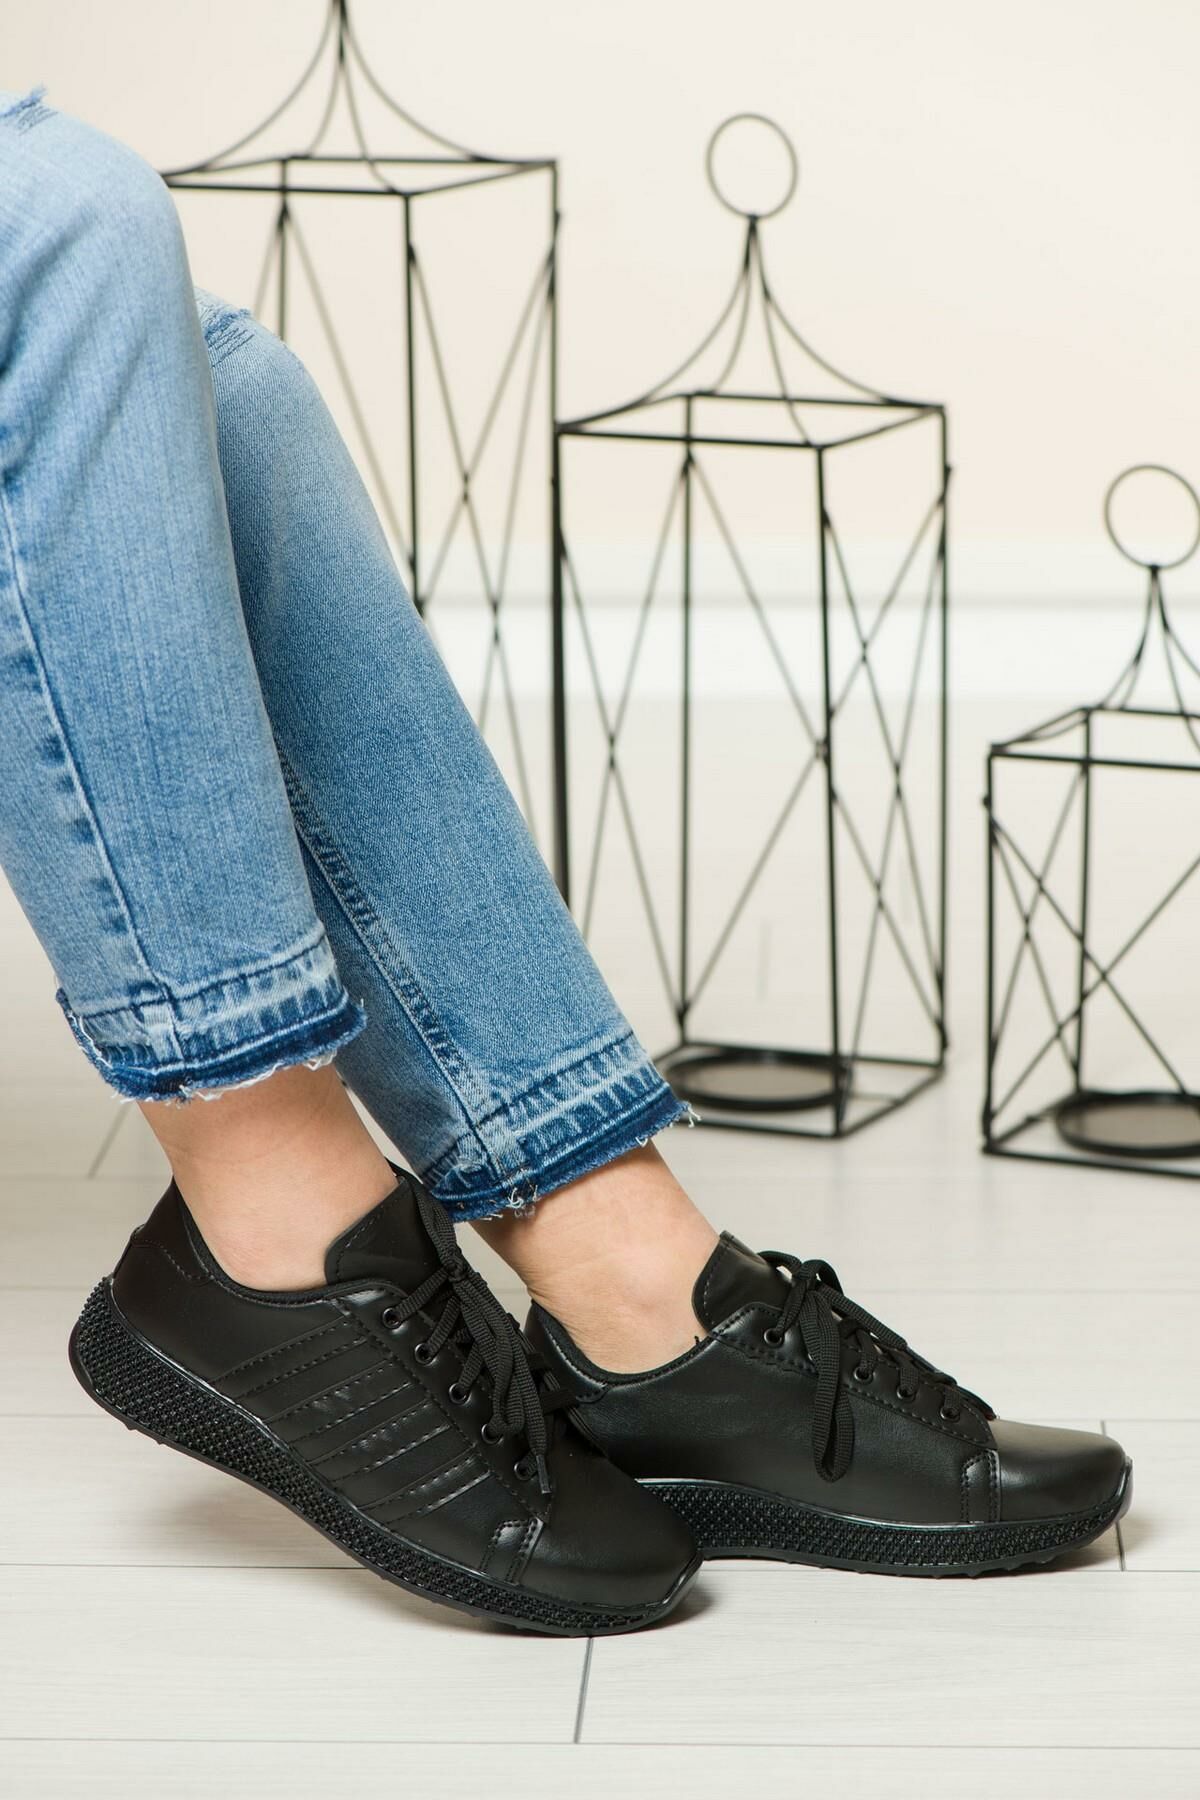 Soobepark Sneaker Günlük Kadın Spor Ayakkabı Siyah